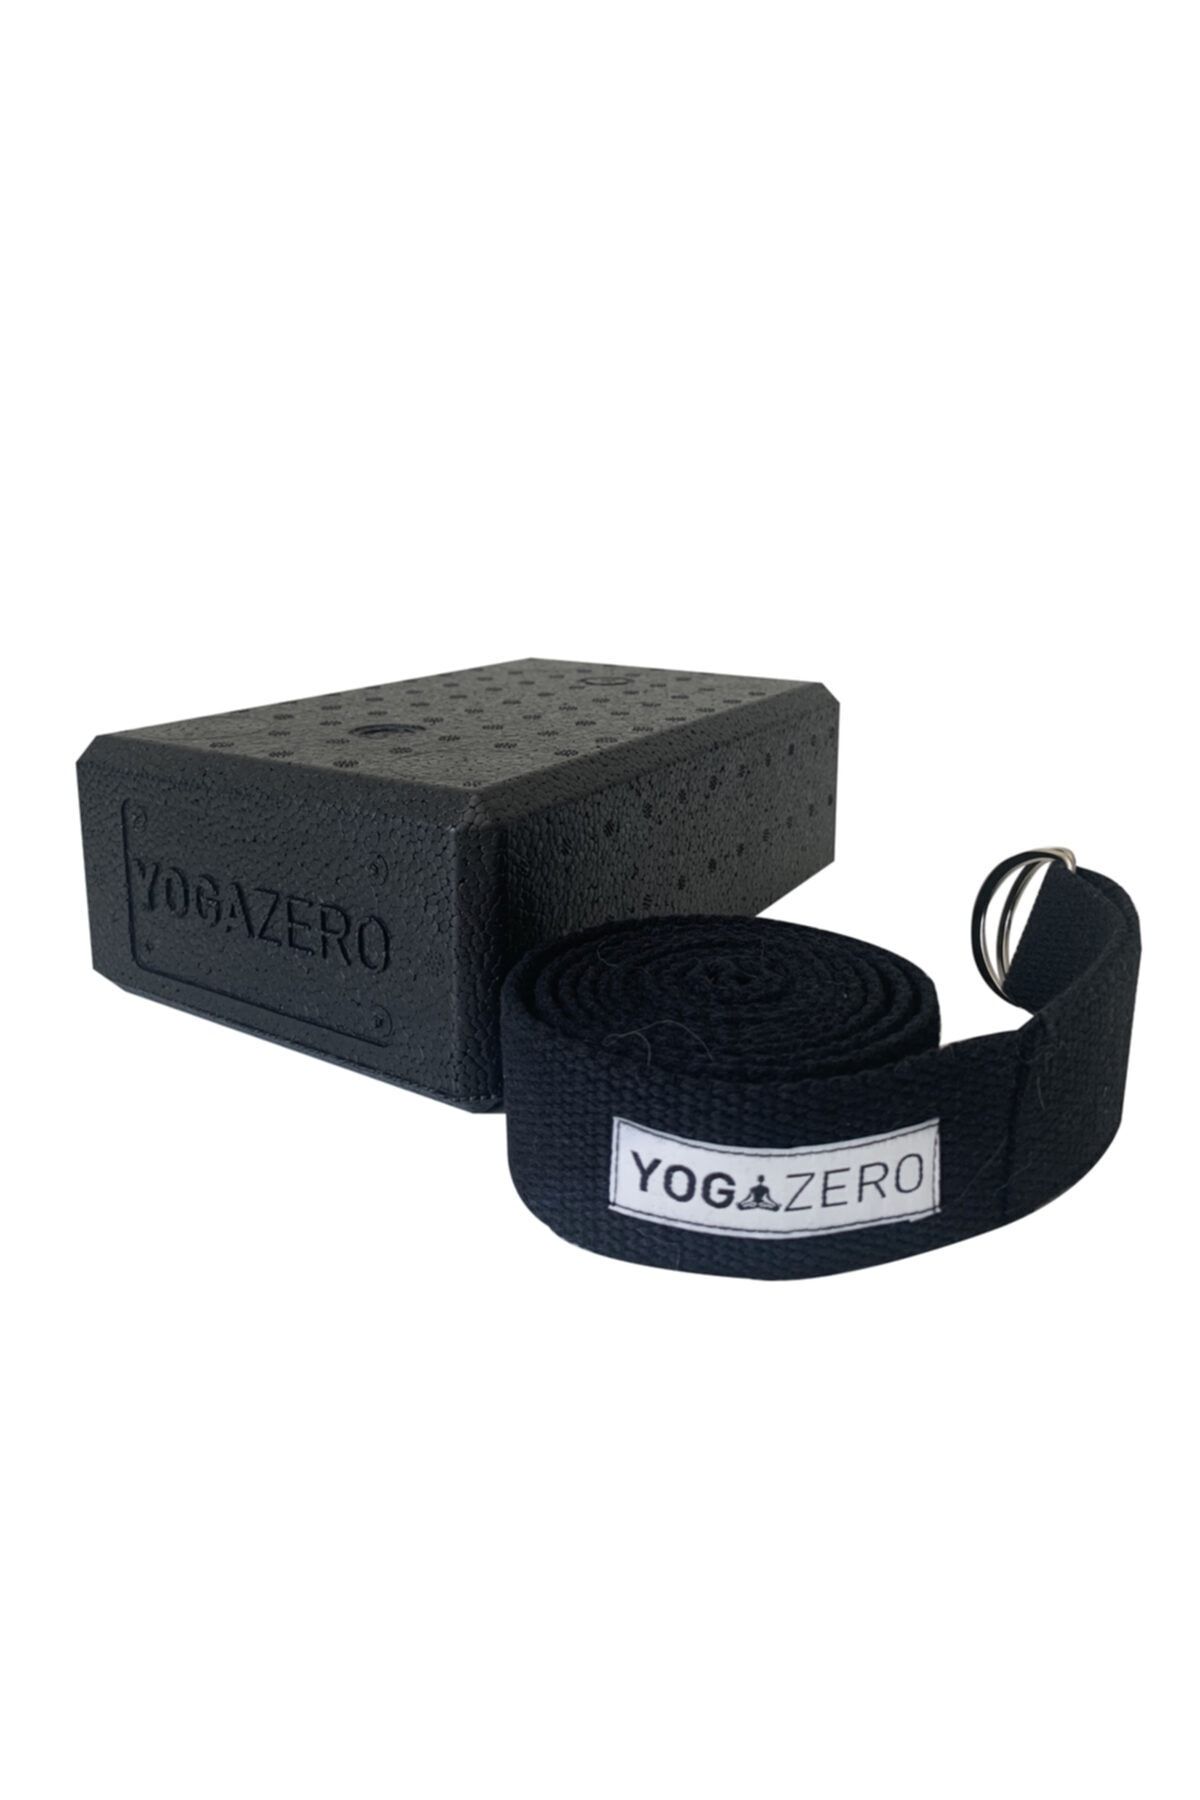 Yoga Zero Siyah Köpük Yoga Blok Ve Renk Yoga Kemer 1 Adet